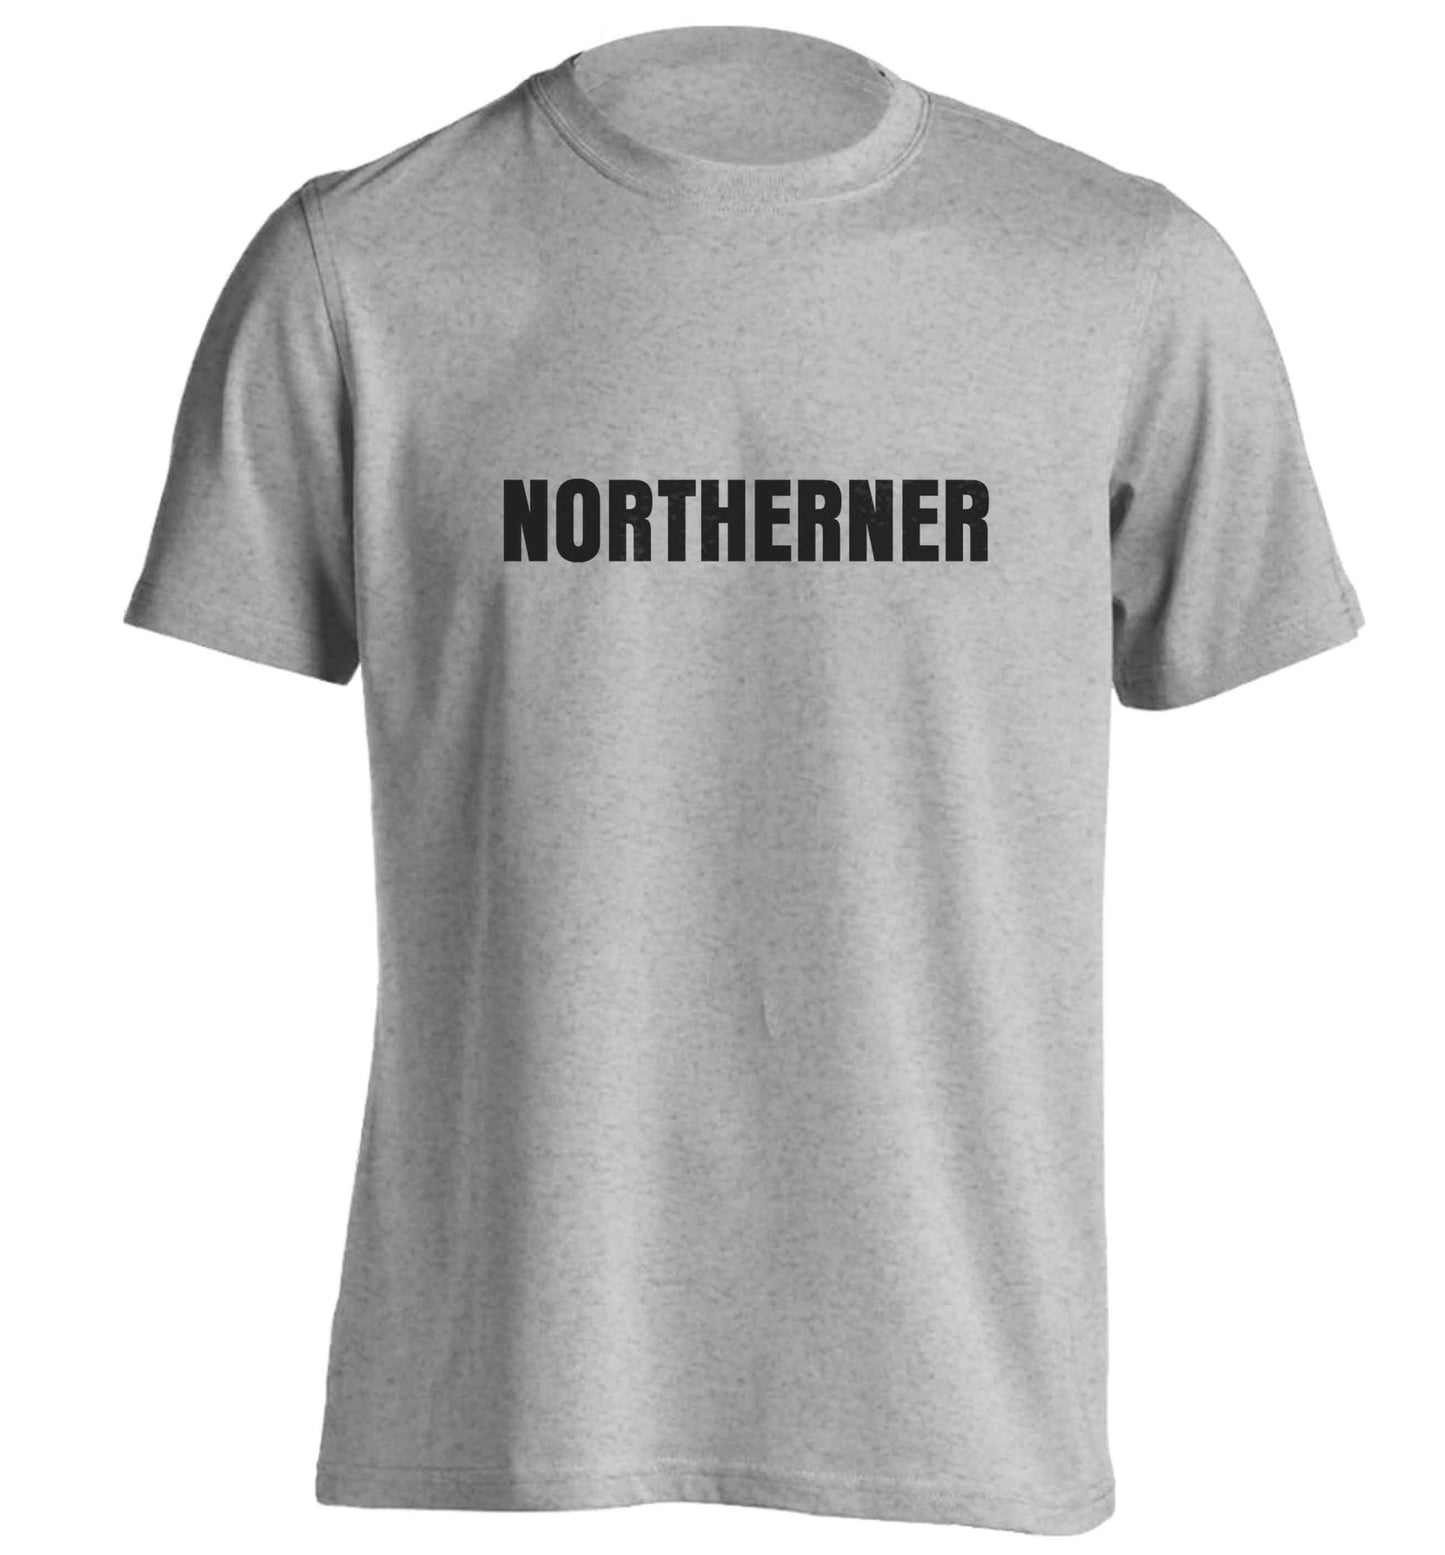 Northerner adults unisex grey Tshirt 2XL